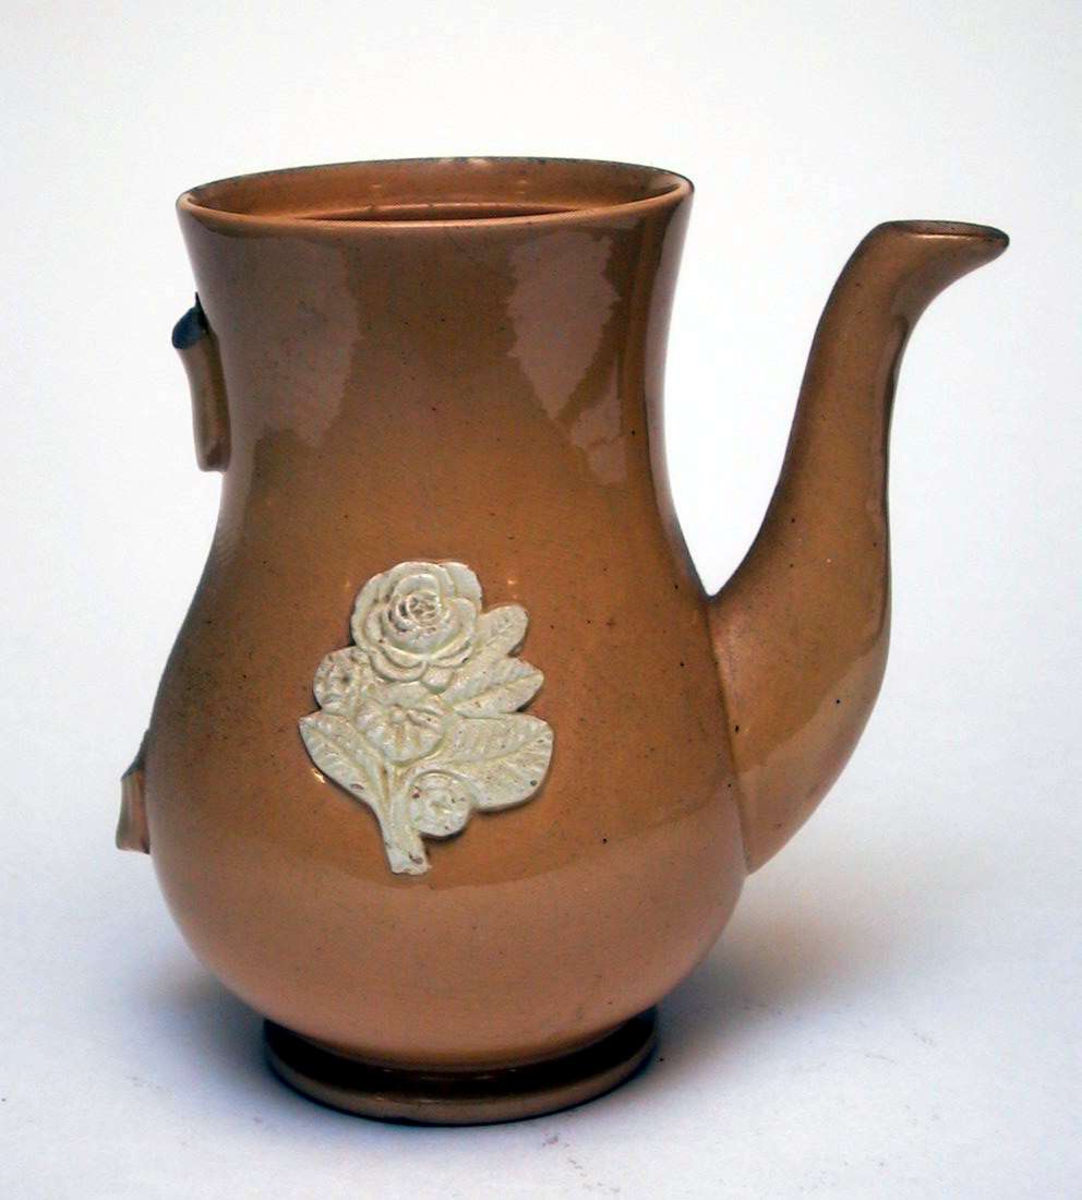 Kaffekanne av gul keramikk med påsatt blomsterdekor. Dekoren er elfenbenshvit. Lokket og hanken mangler.
Kannen har ingen produksjonsmerker. 